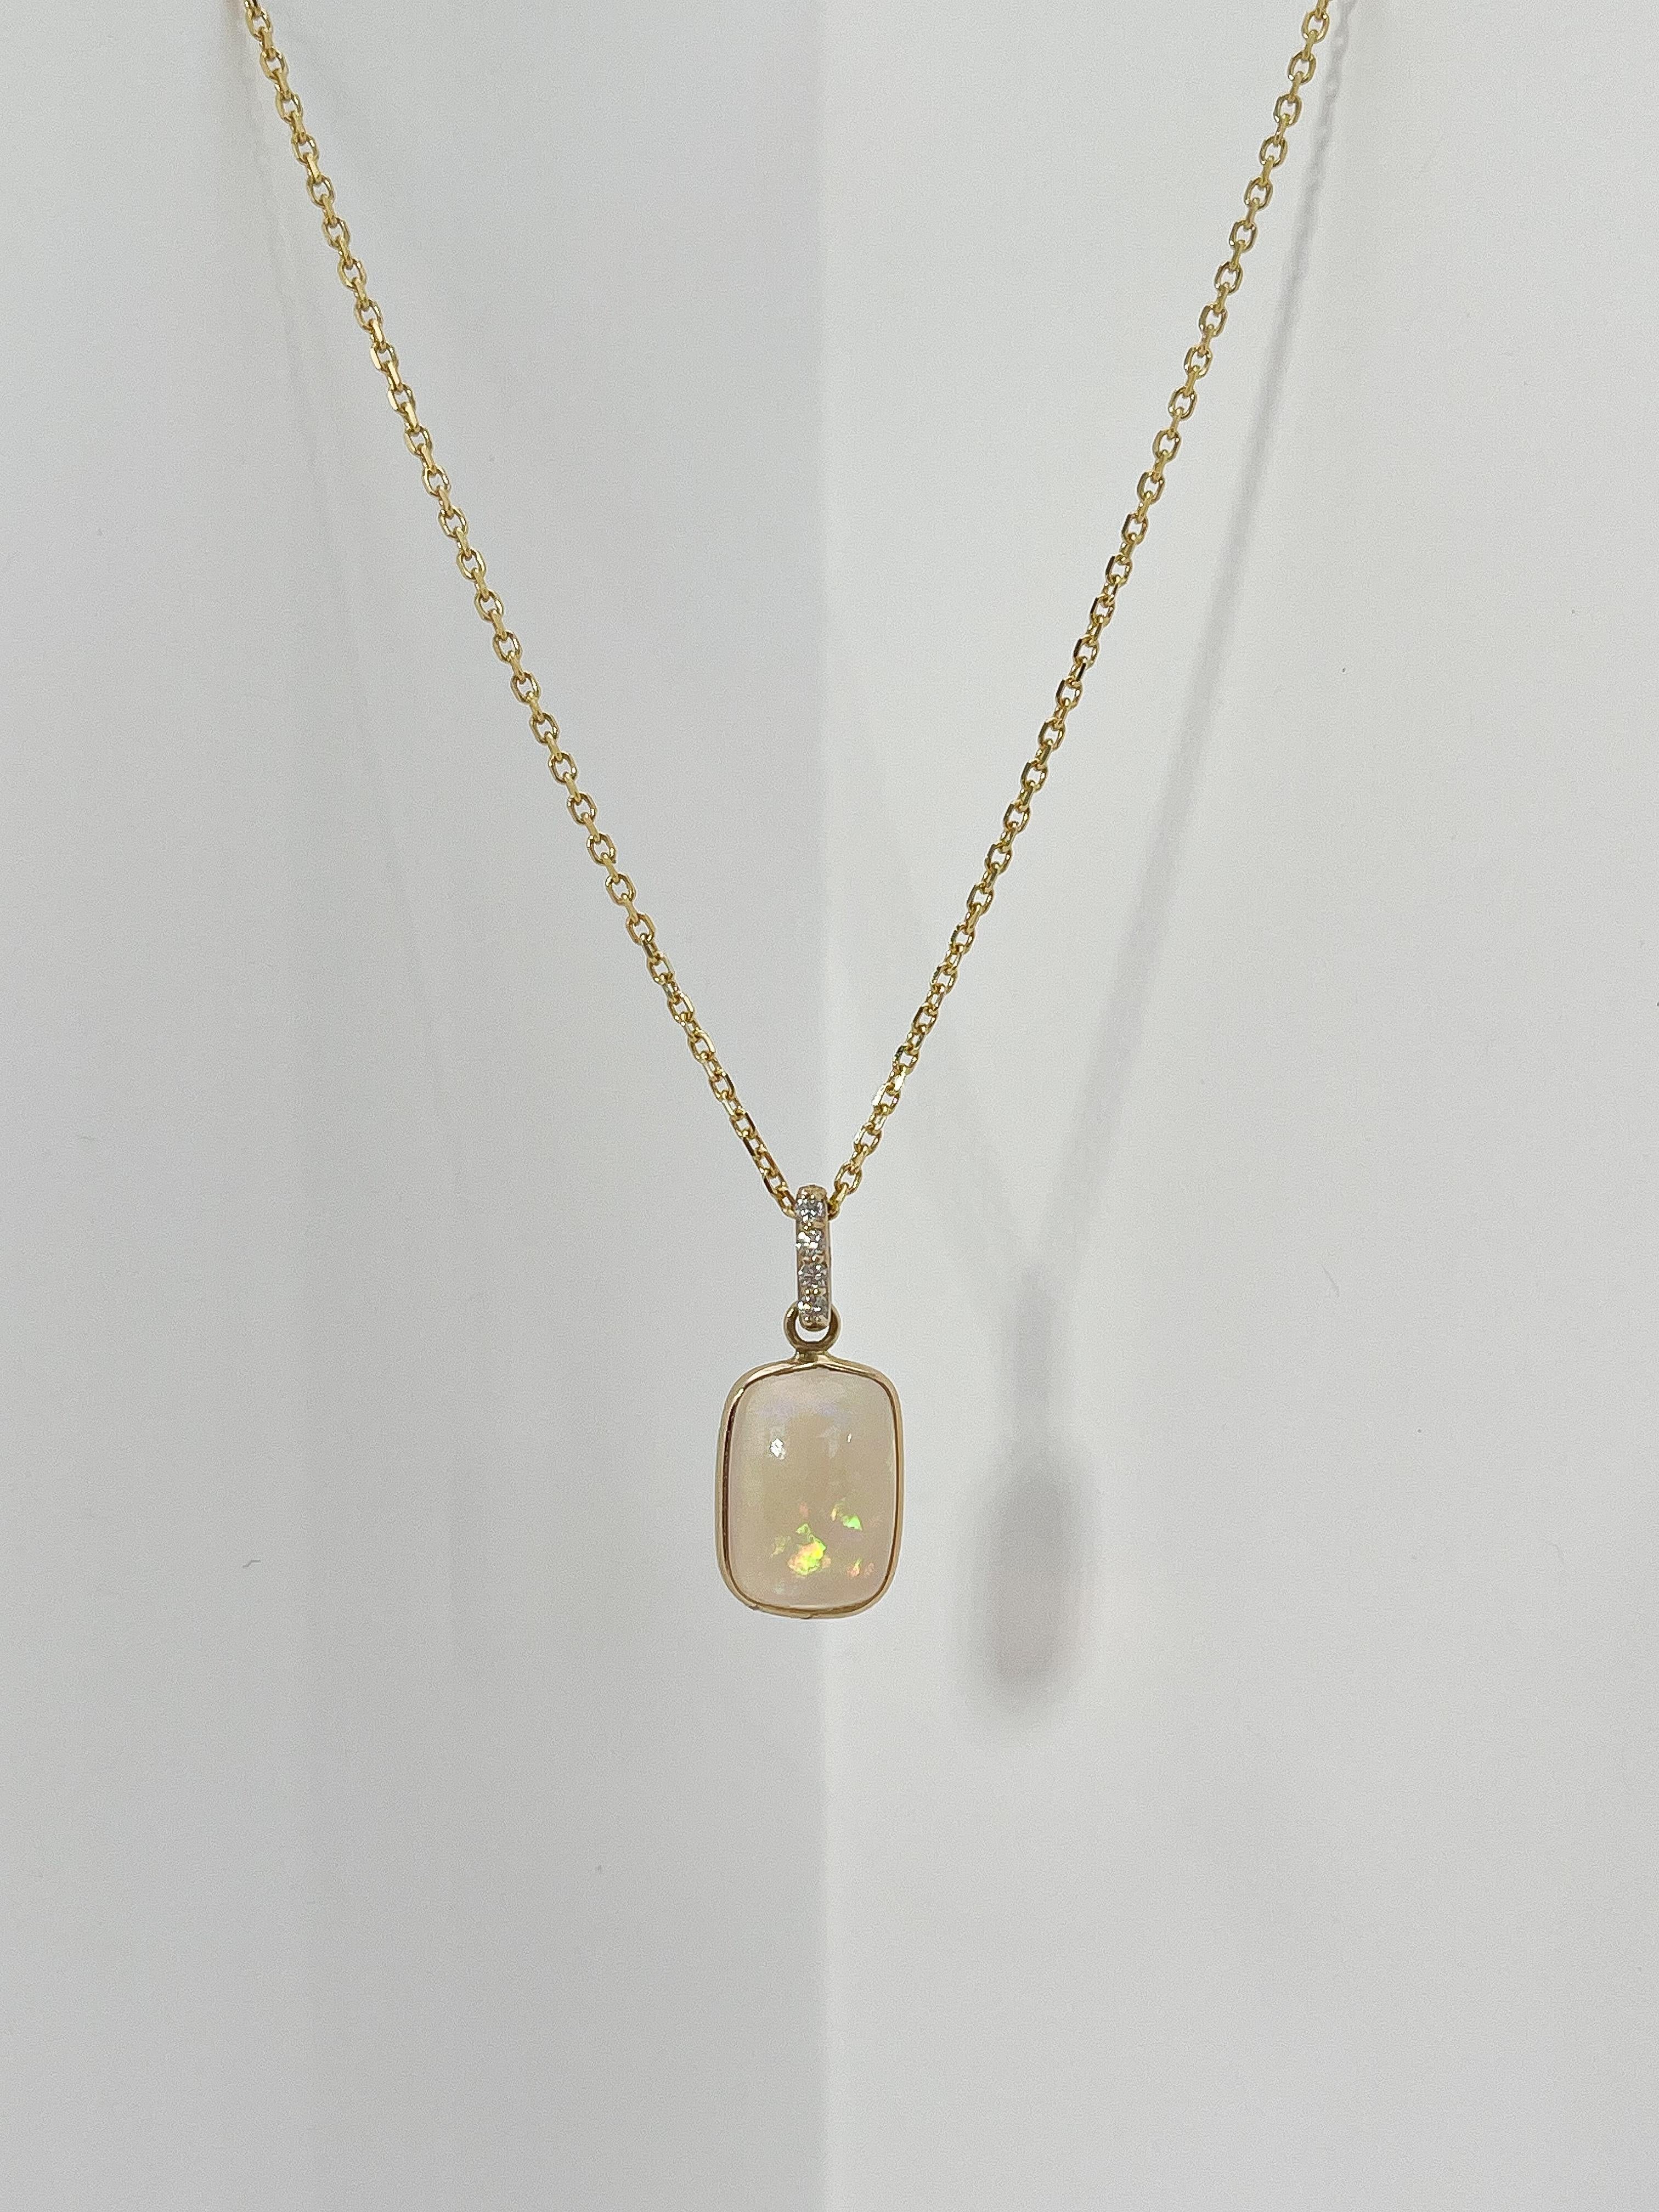 Collier en or jaune 14k avec opale et diamant .06 CTW. Les diamants de la bague sont ronds, les dimensions du pendentif sont de 12,5 x 9, la longueur du collier est de 16 pouces et son poids total est de 3,13 grammes.